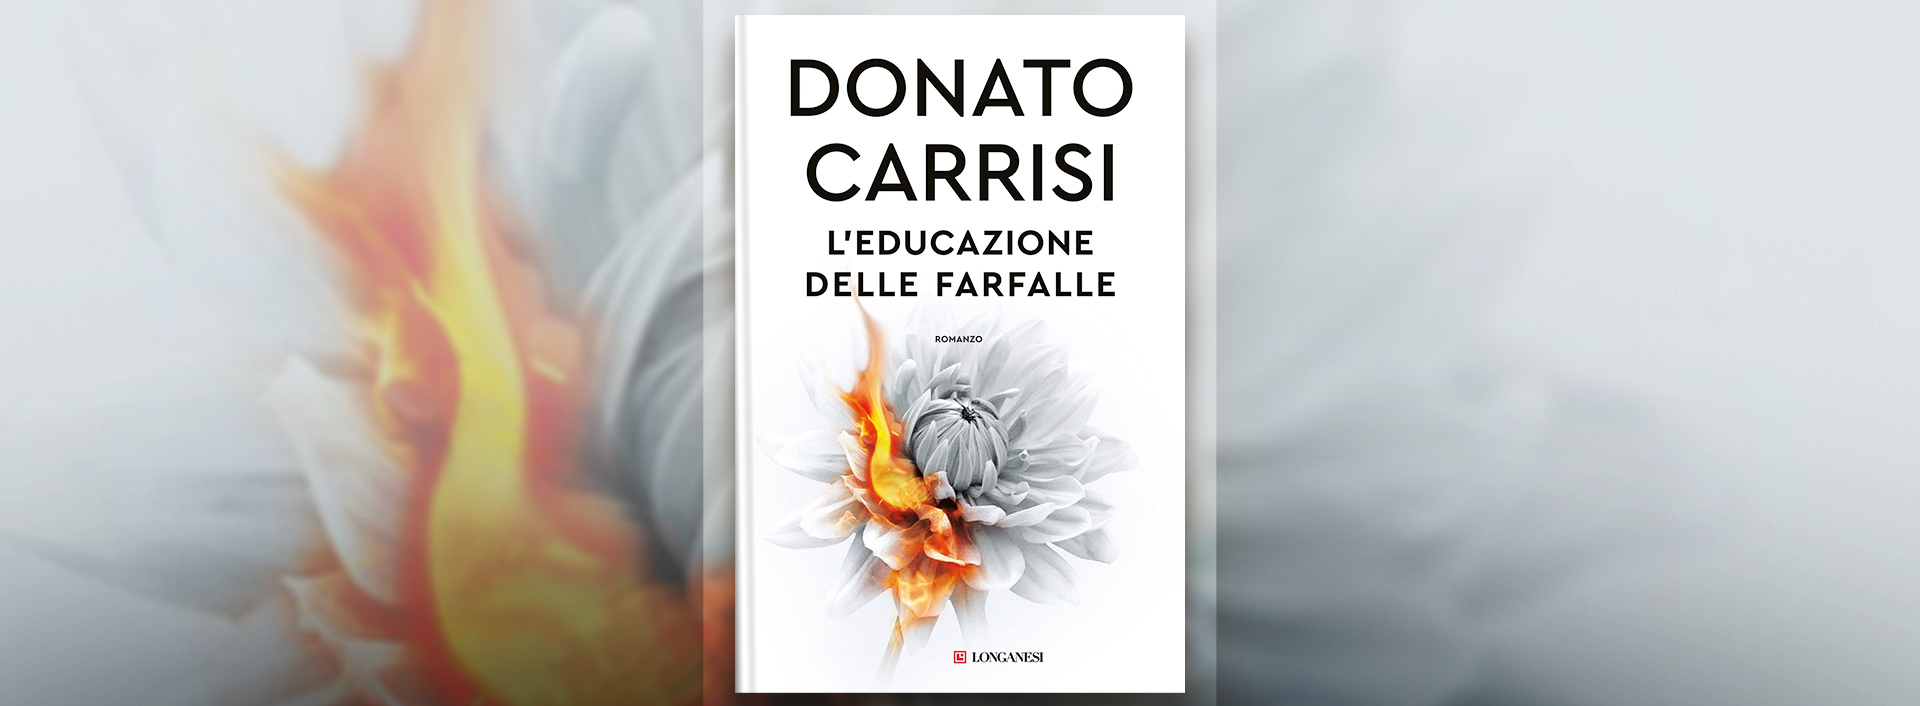 L'educazione delle farfalle, presentazione del libro di Donato Carrisi -  Mentelocale Web Magazine